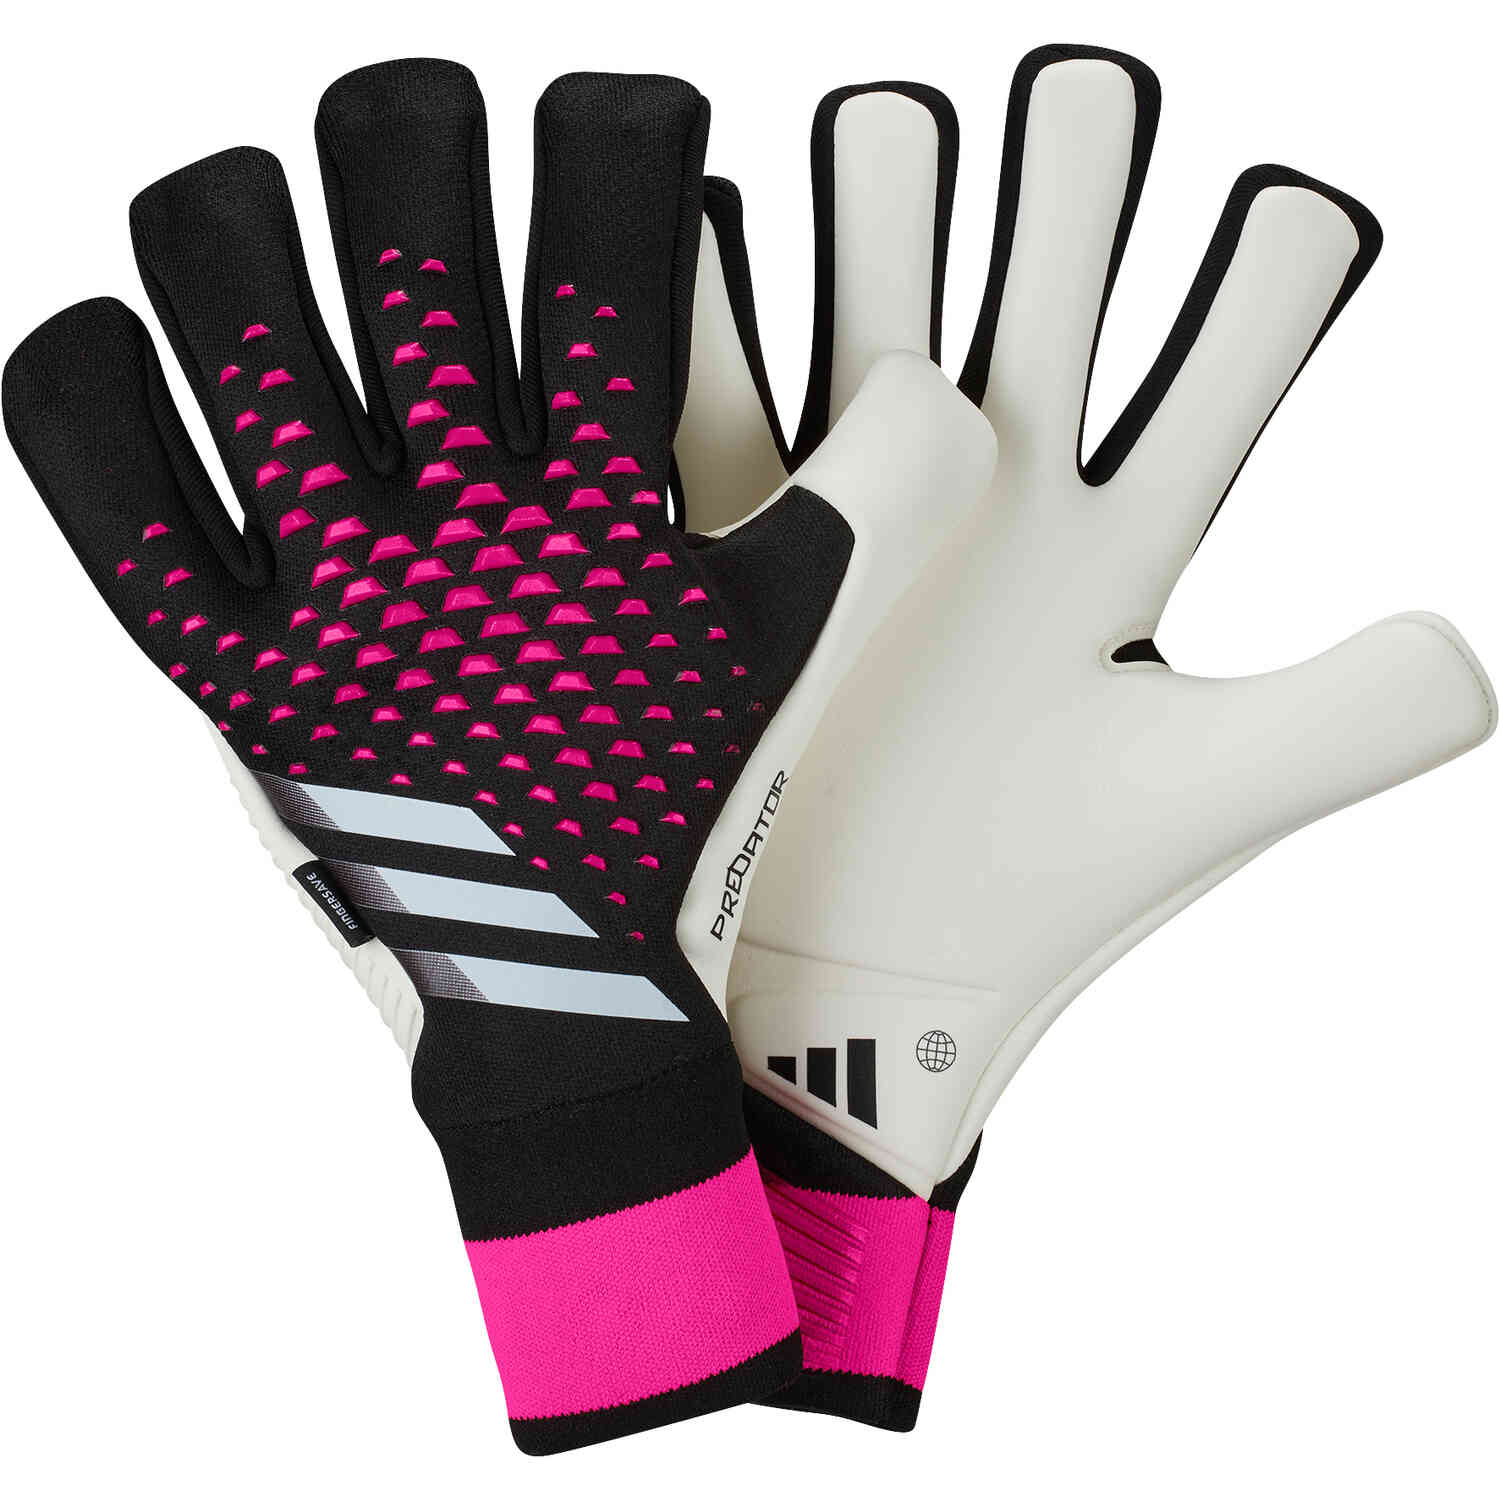 Predator Pro Fingersave Goalkeeper Gloves - Own Your Football Pack - Master